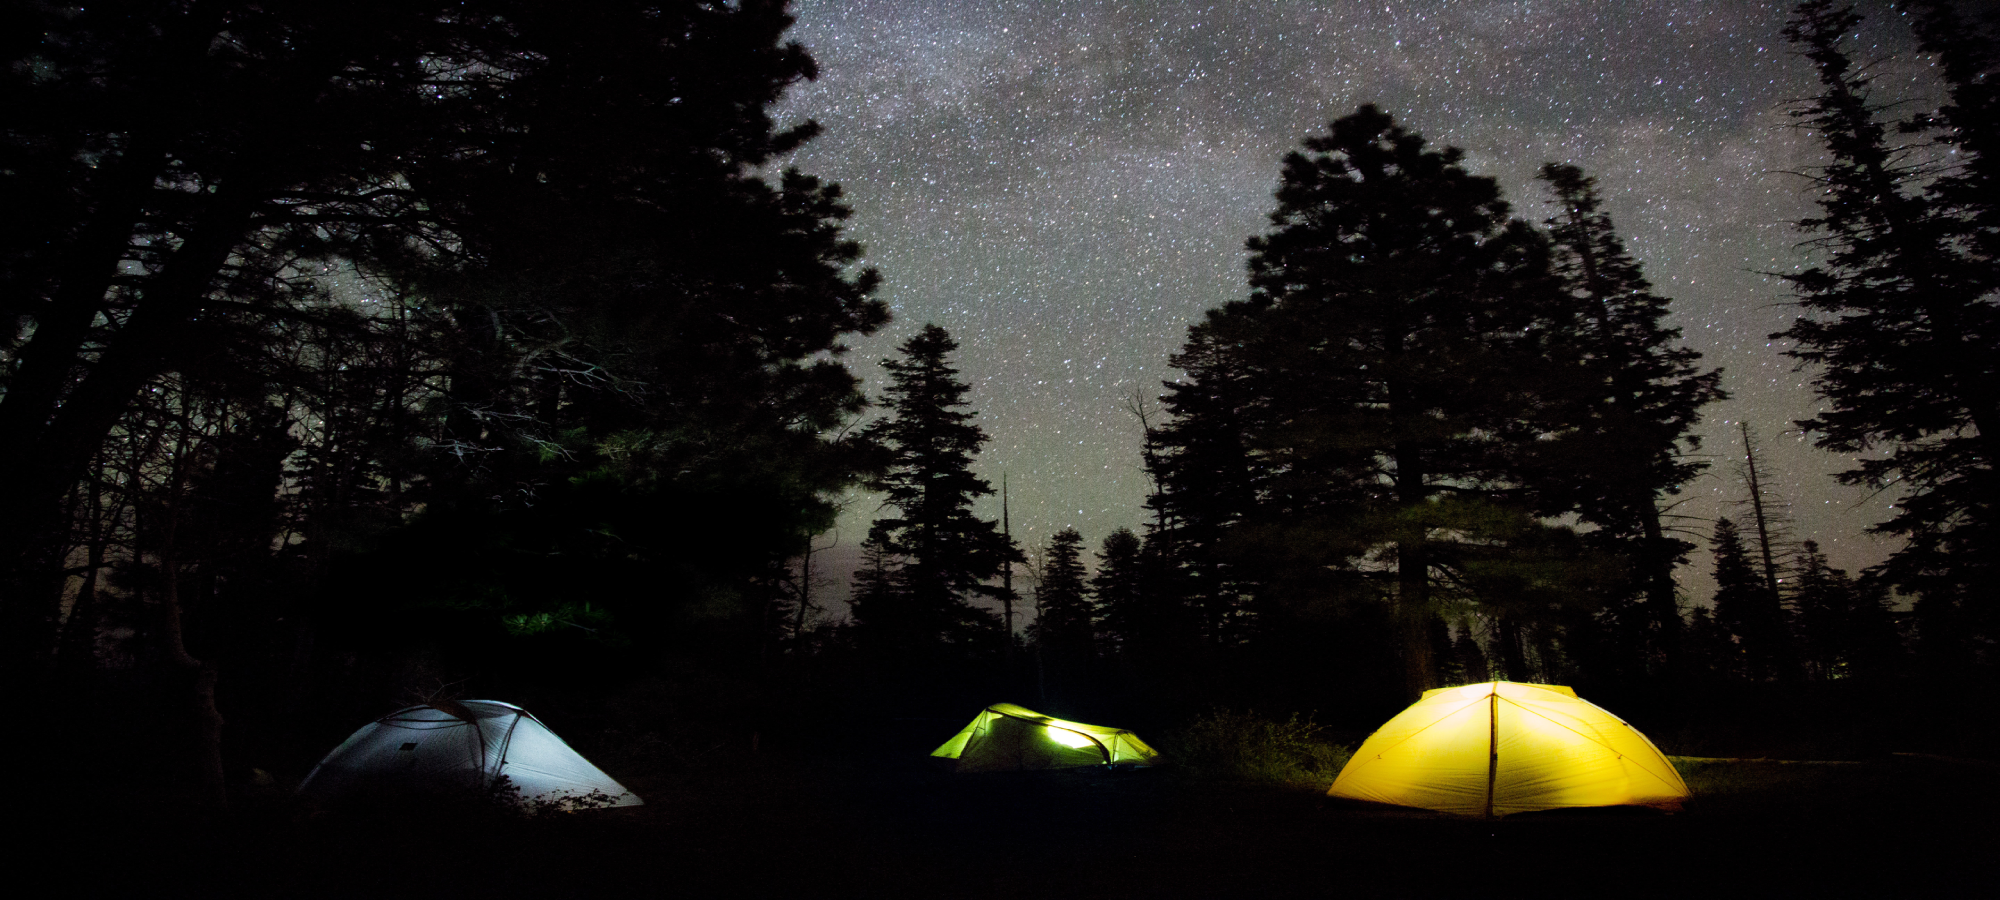 ¿Cómo asegurar una buena noche de campamento?